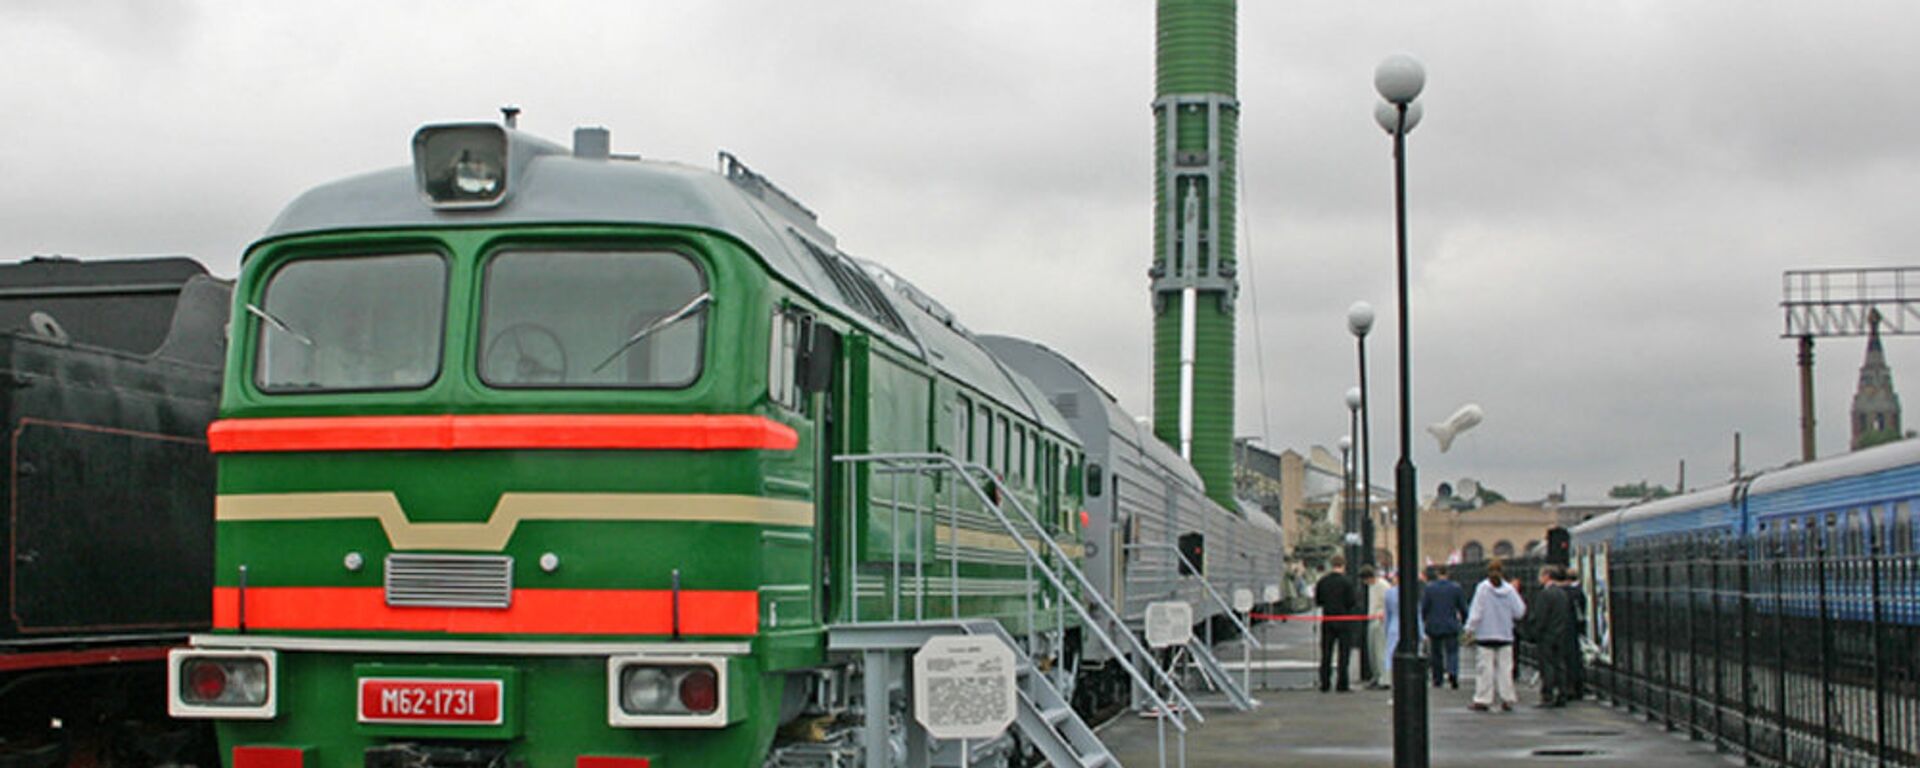 Боевой железнодорожный ракетный комплекс (БЖРК) - Sputnik Latvija, 1920, 09.08.2020